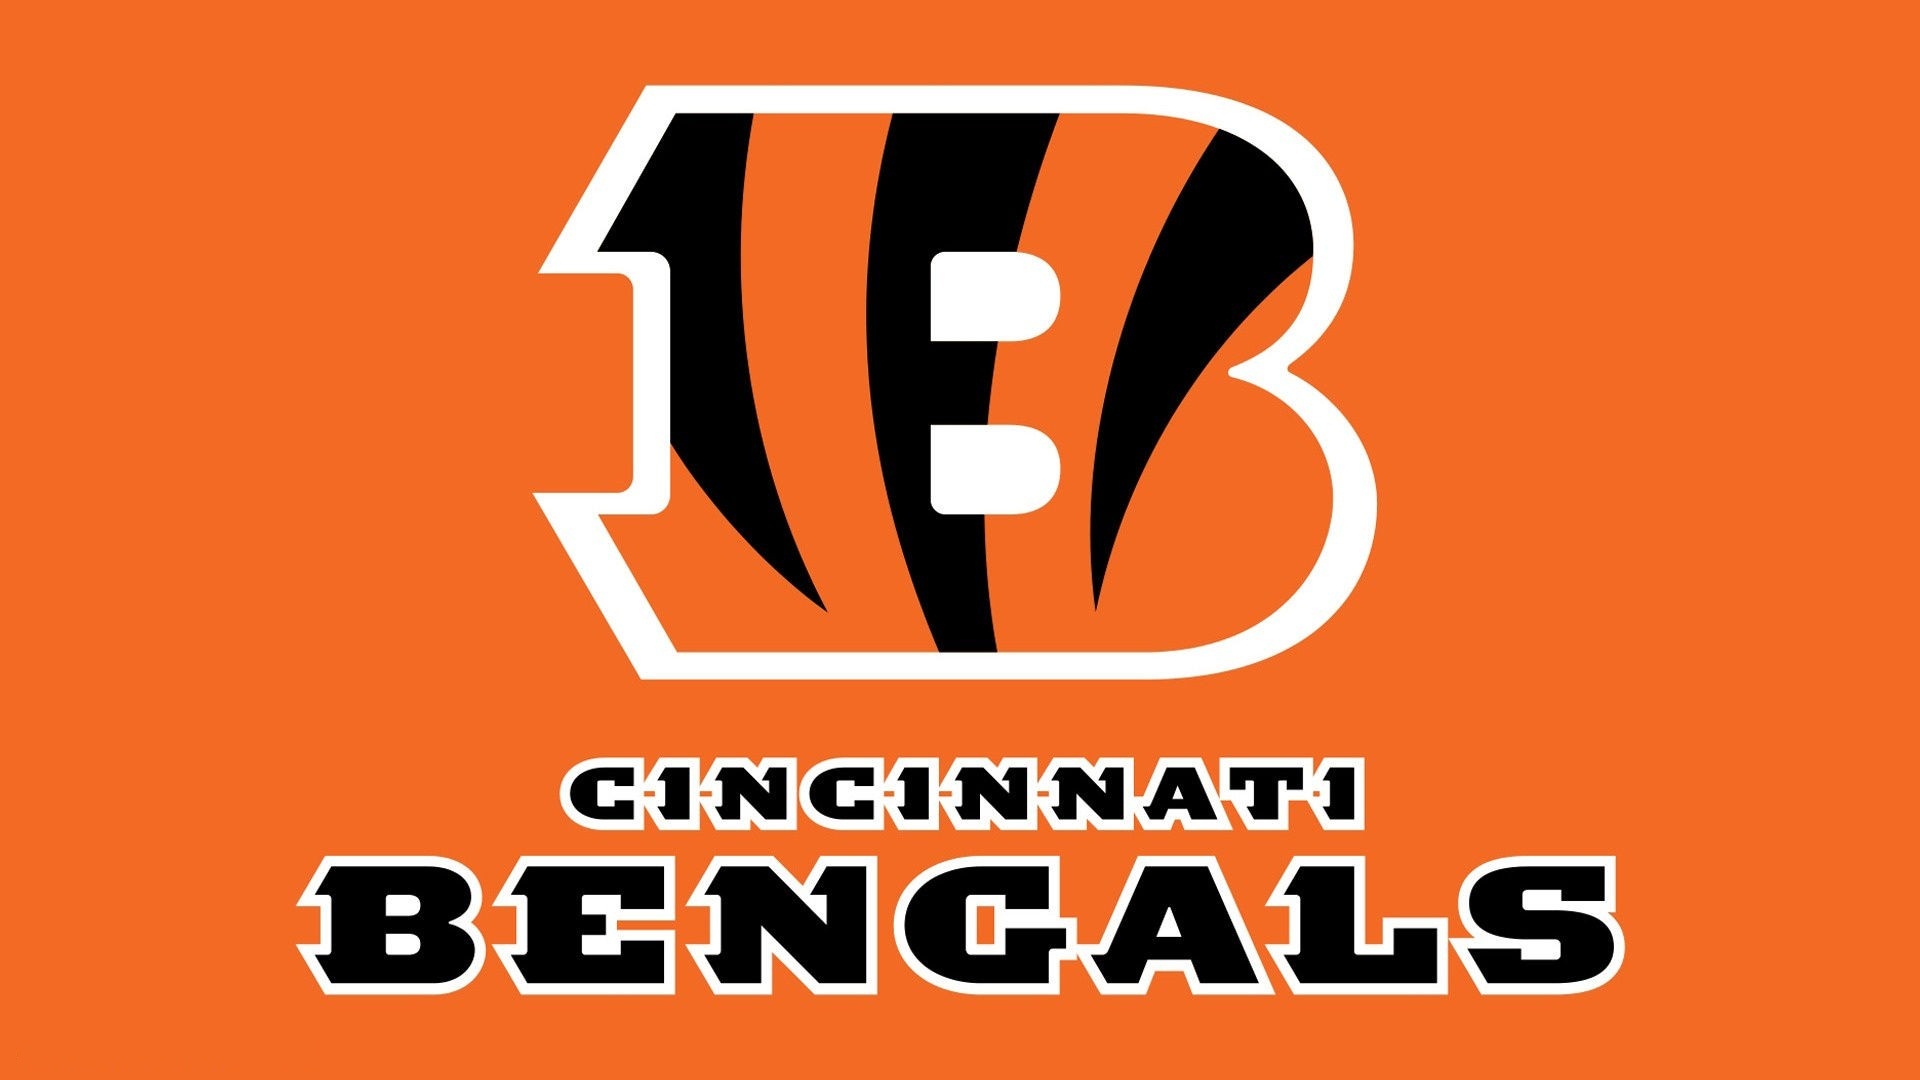 Cincinnati Bengals Mac Backgrounds With Resolution 1920X1080